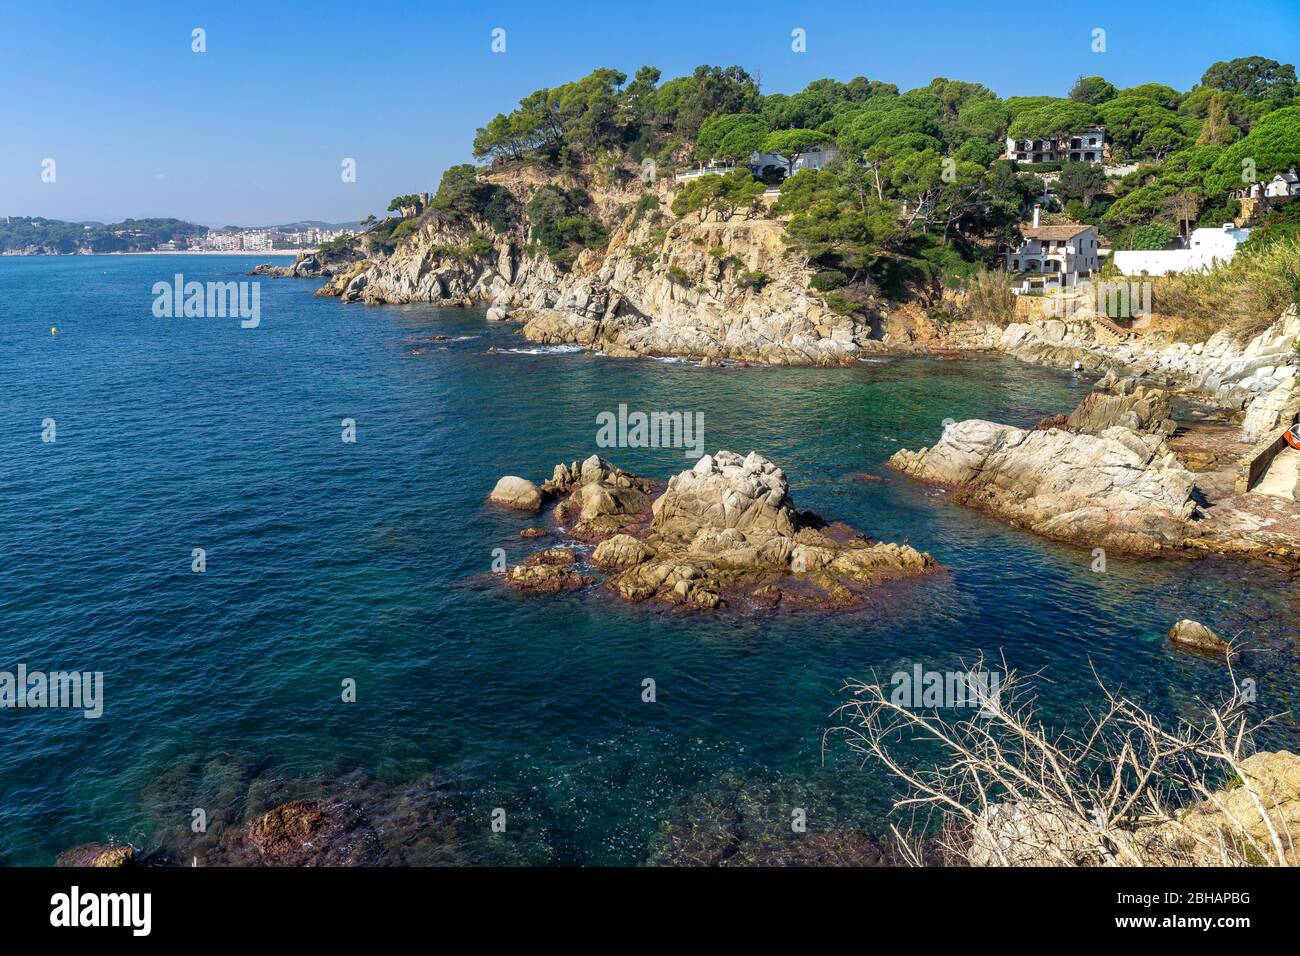 Europa, Spanien, Katalonien, Costa Brava, kleine Bucht kurz vor Lloret de Mar an der Costa Brava Stockfoto